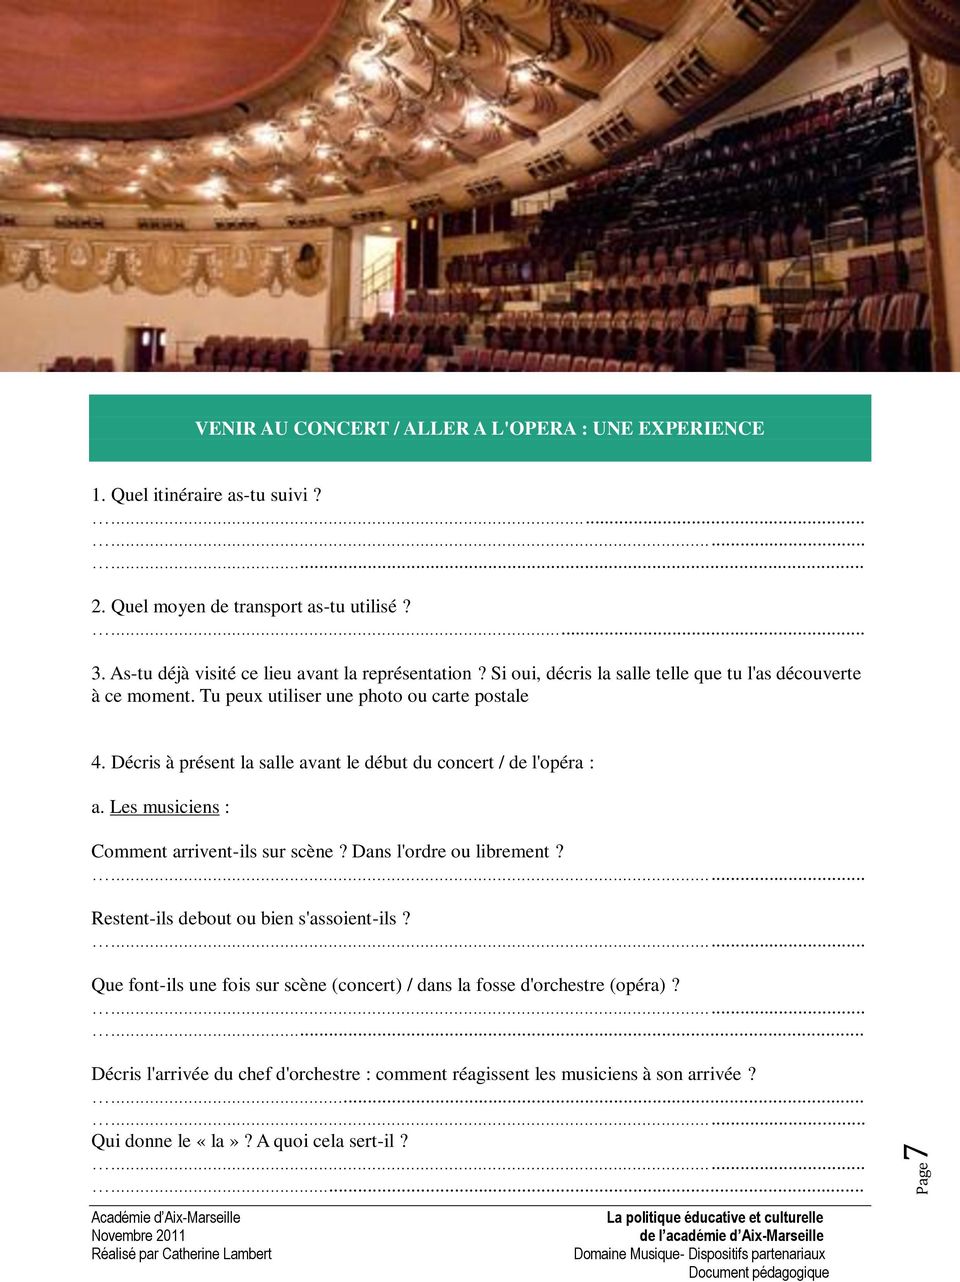 Décris à présent la salle avant le début du concert / de l'opéra : a. Les musiciens : Comment arrivent-ils sur scène? Dans l'ordre ou librement?